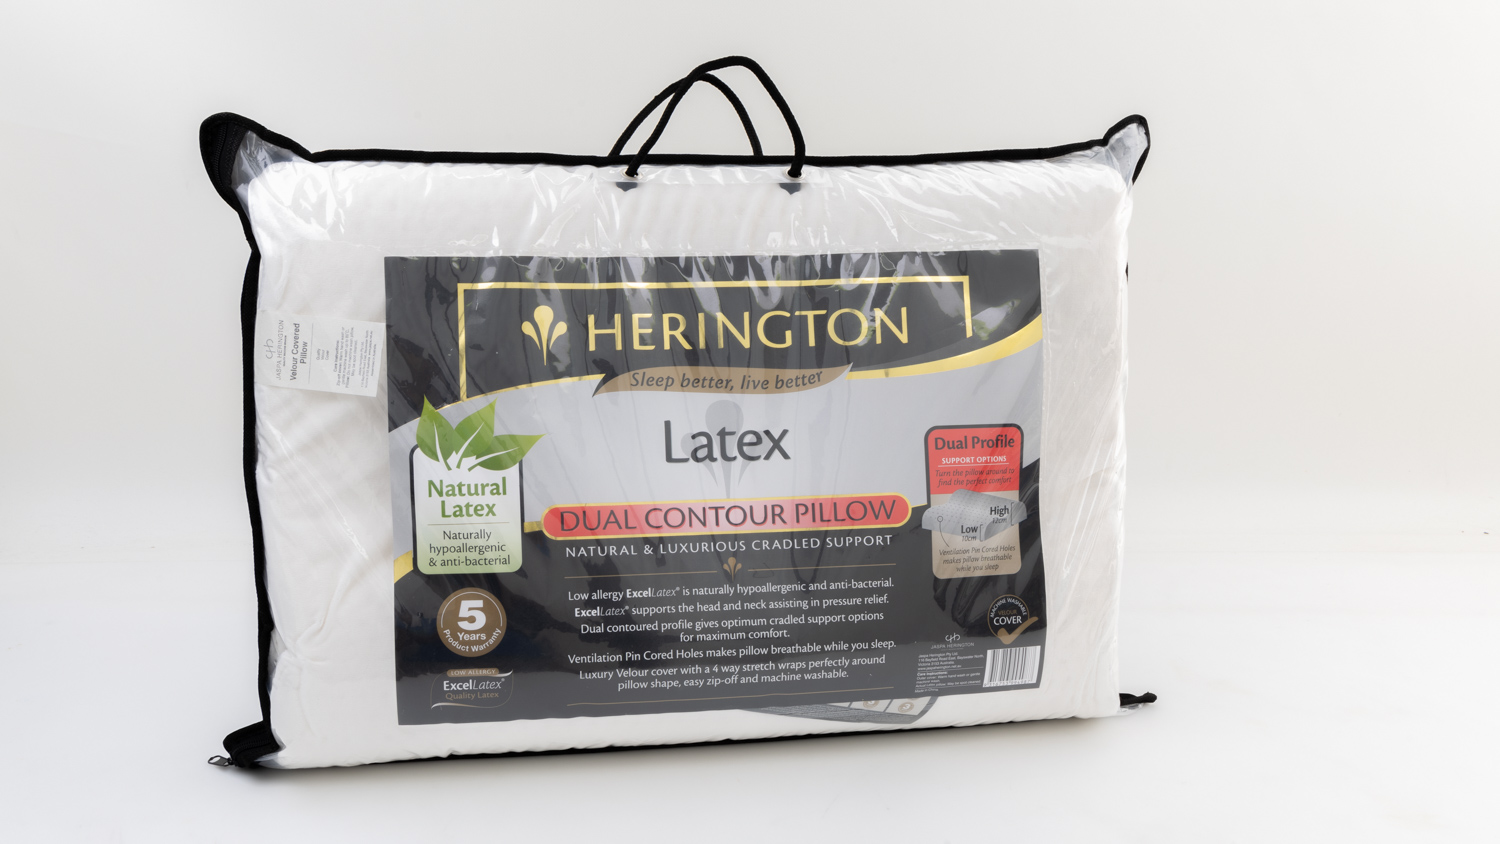 Herington Latex Dual Contour Pillow carousel image